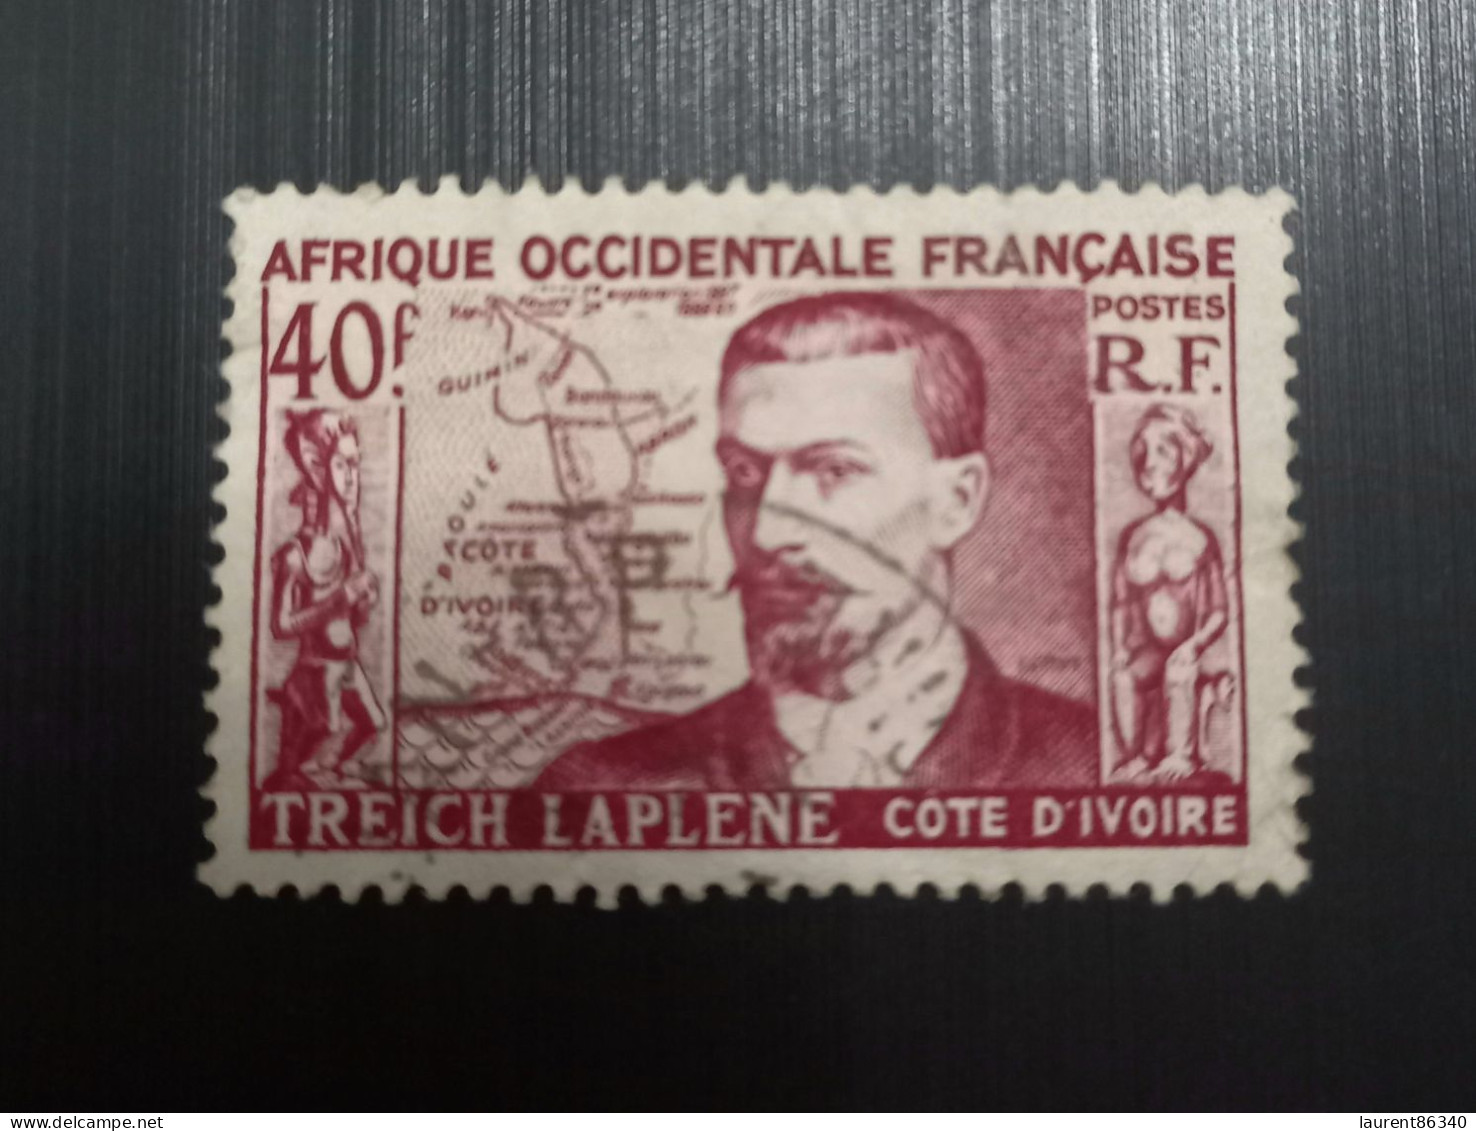 Afrique Occidentale Française 1952 Marcel Treich-Laplène (1860-1889), Fondateur De La Côte D'Ivoire - Used Stamps